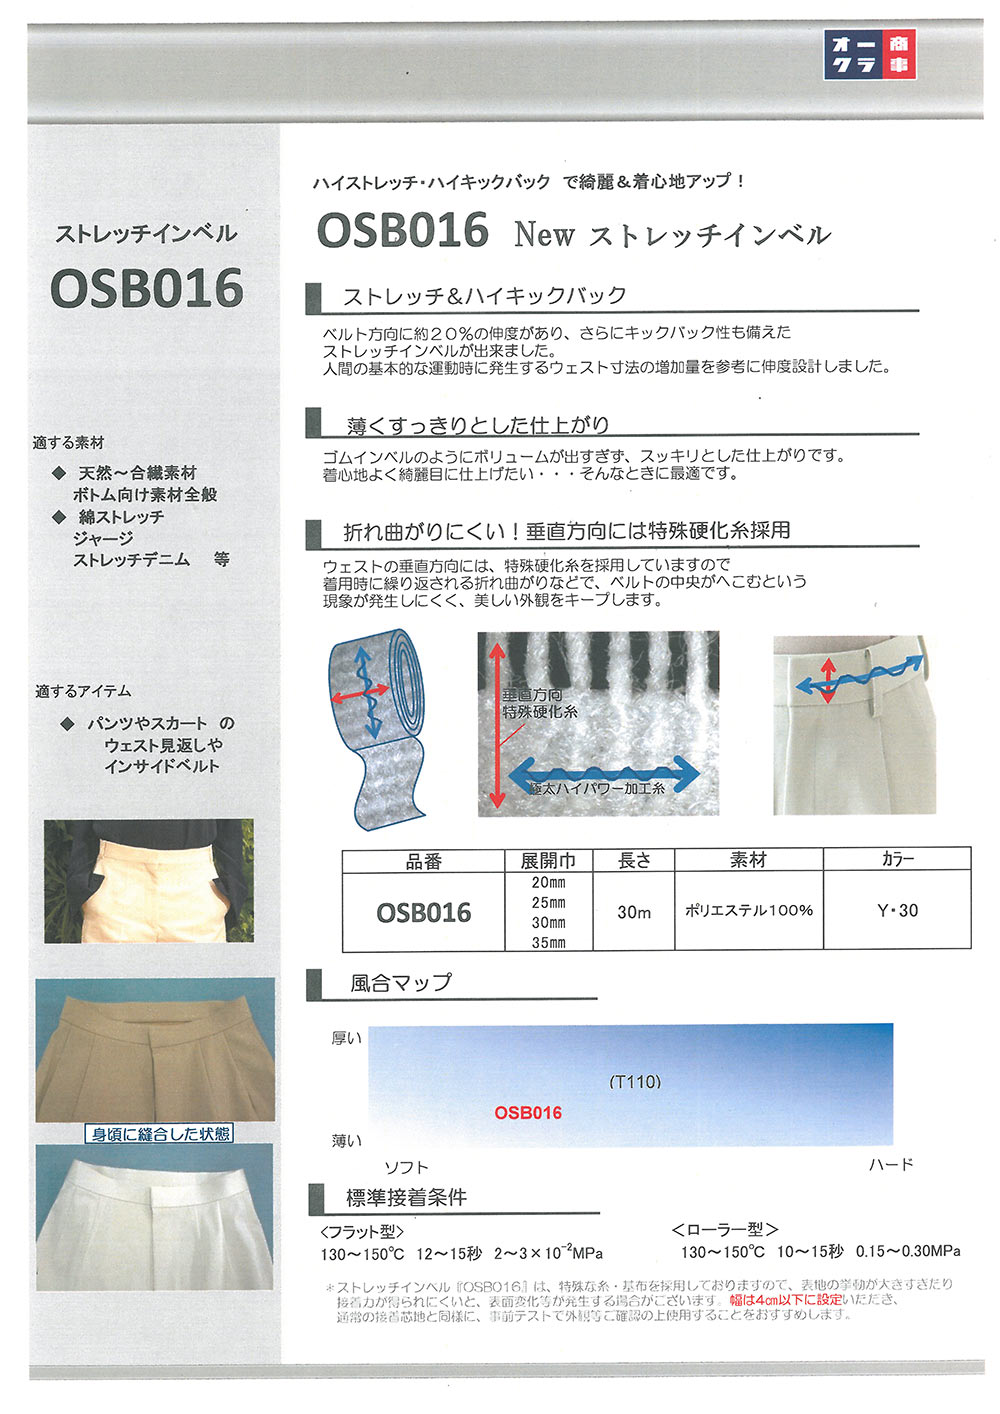 OSB016 스트레치 인벨 접착심지 【아울렛】 닛토보 (닛토보인터라이닝)